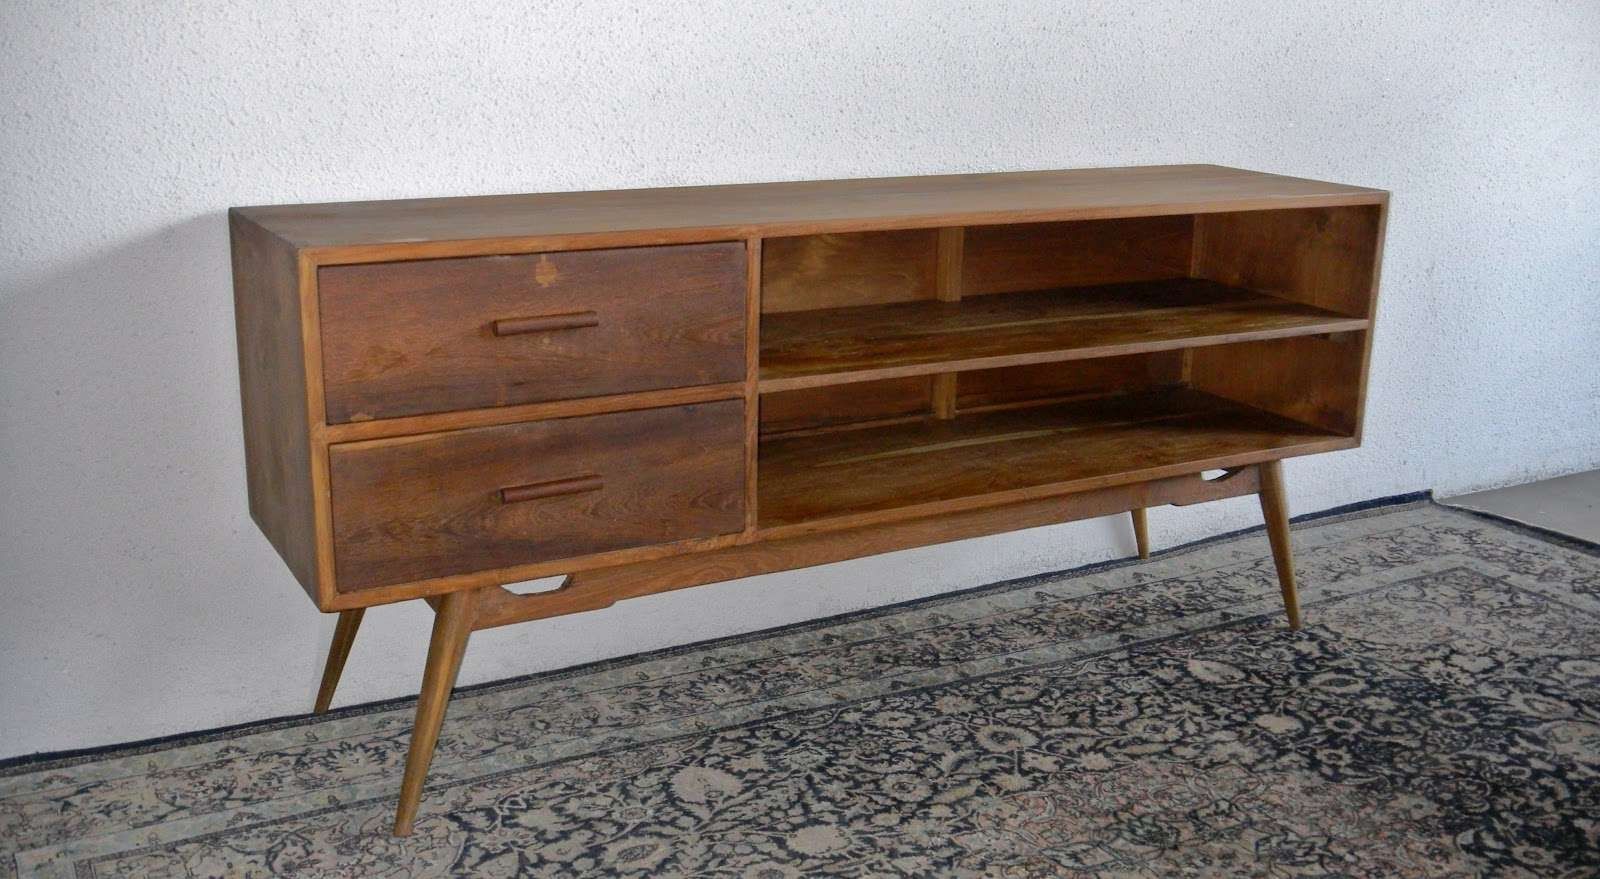 Second Charm Furniture: Vintage Sideboards | Second Charm Within Vintage Sideboards (View 16 of 20)